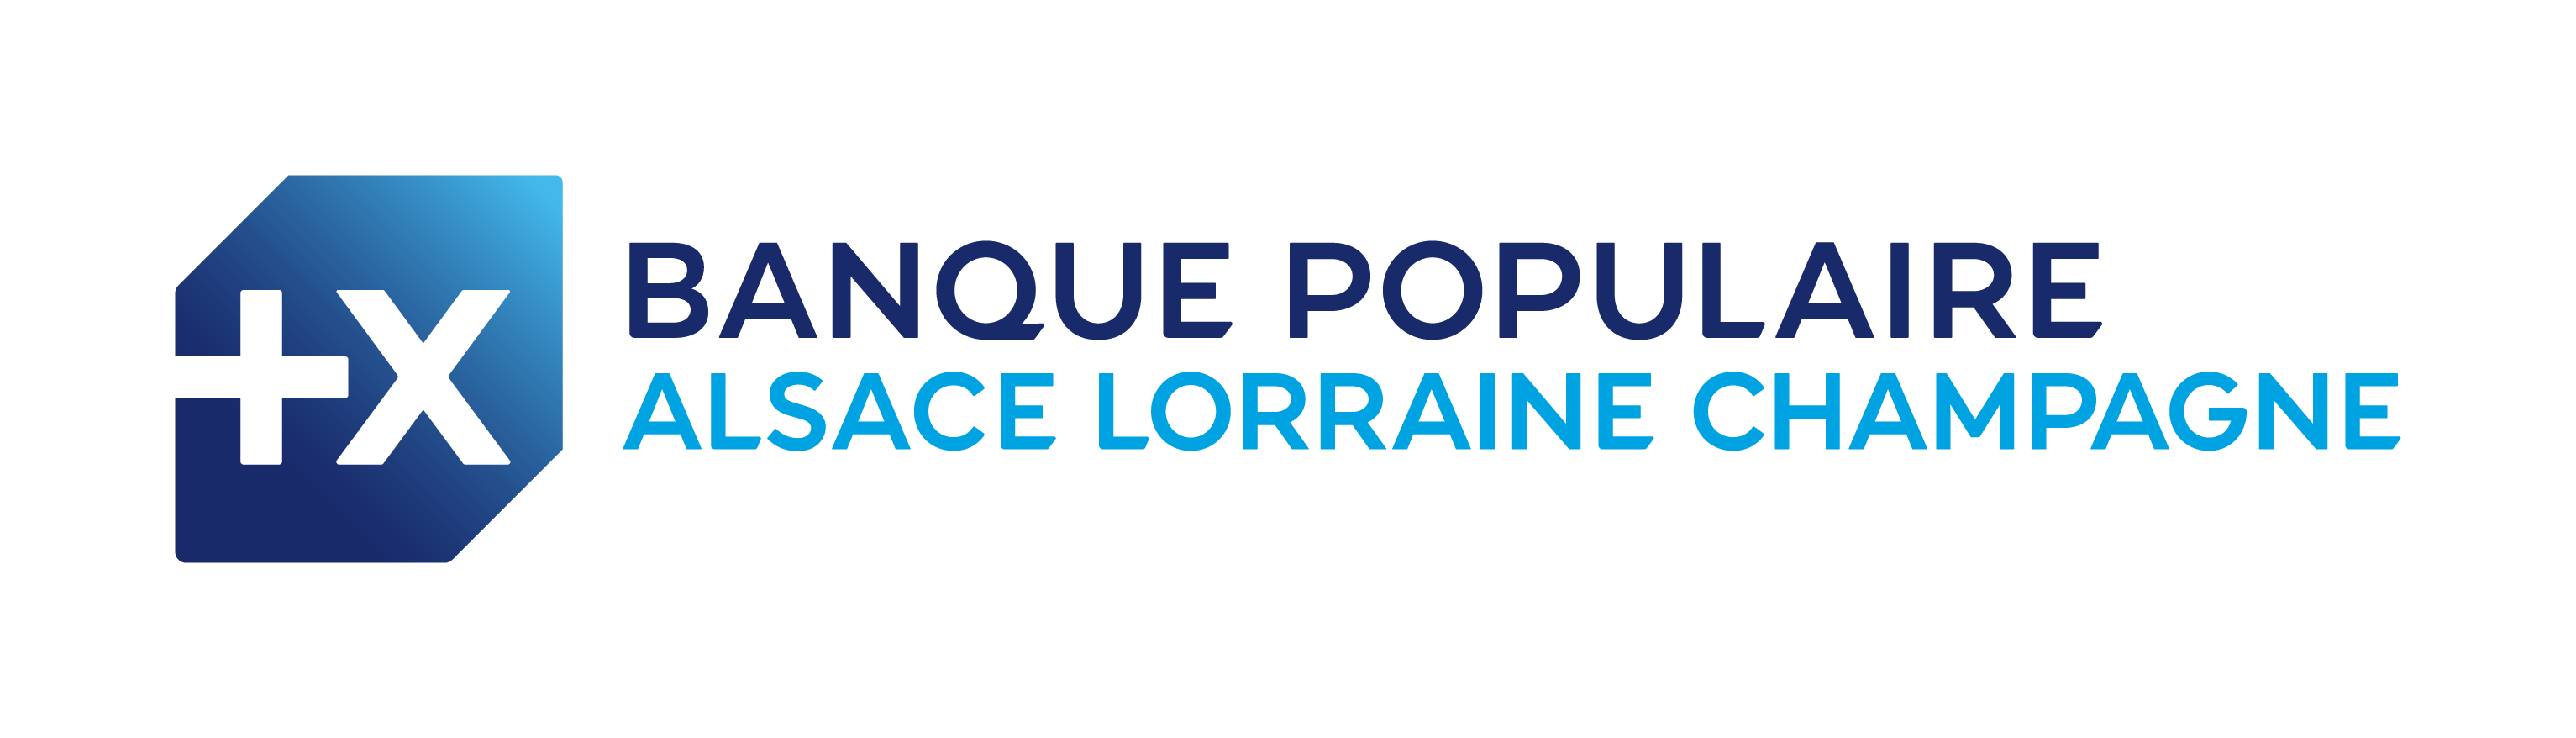 Banque Populaire - Alsace Lorraine Champagne